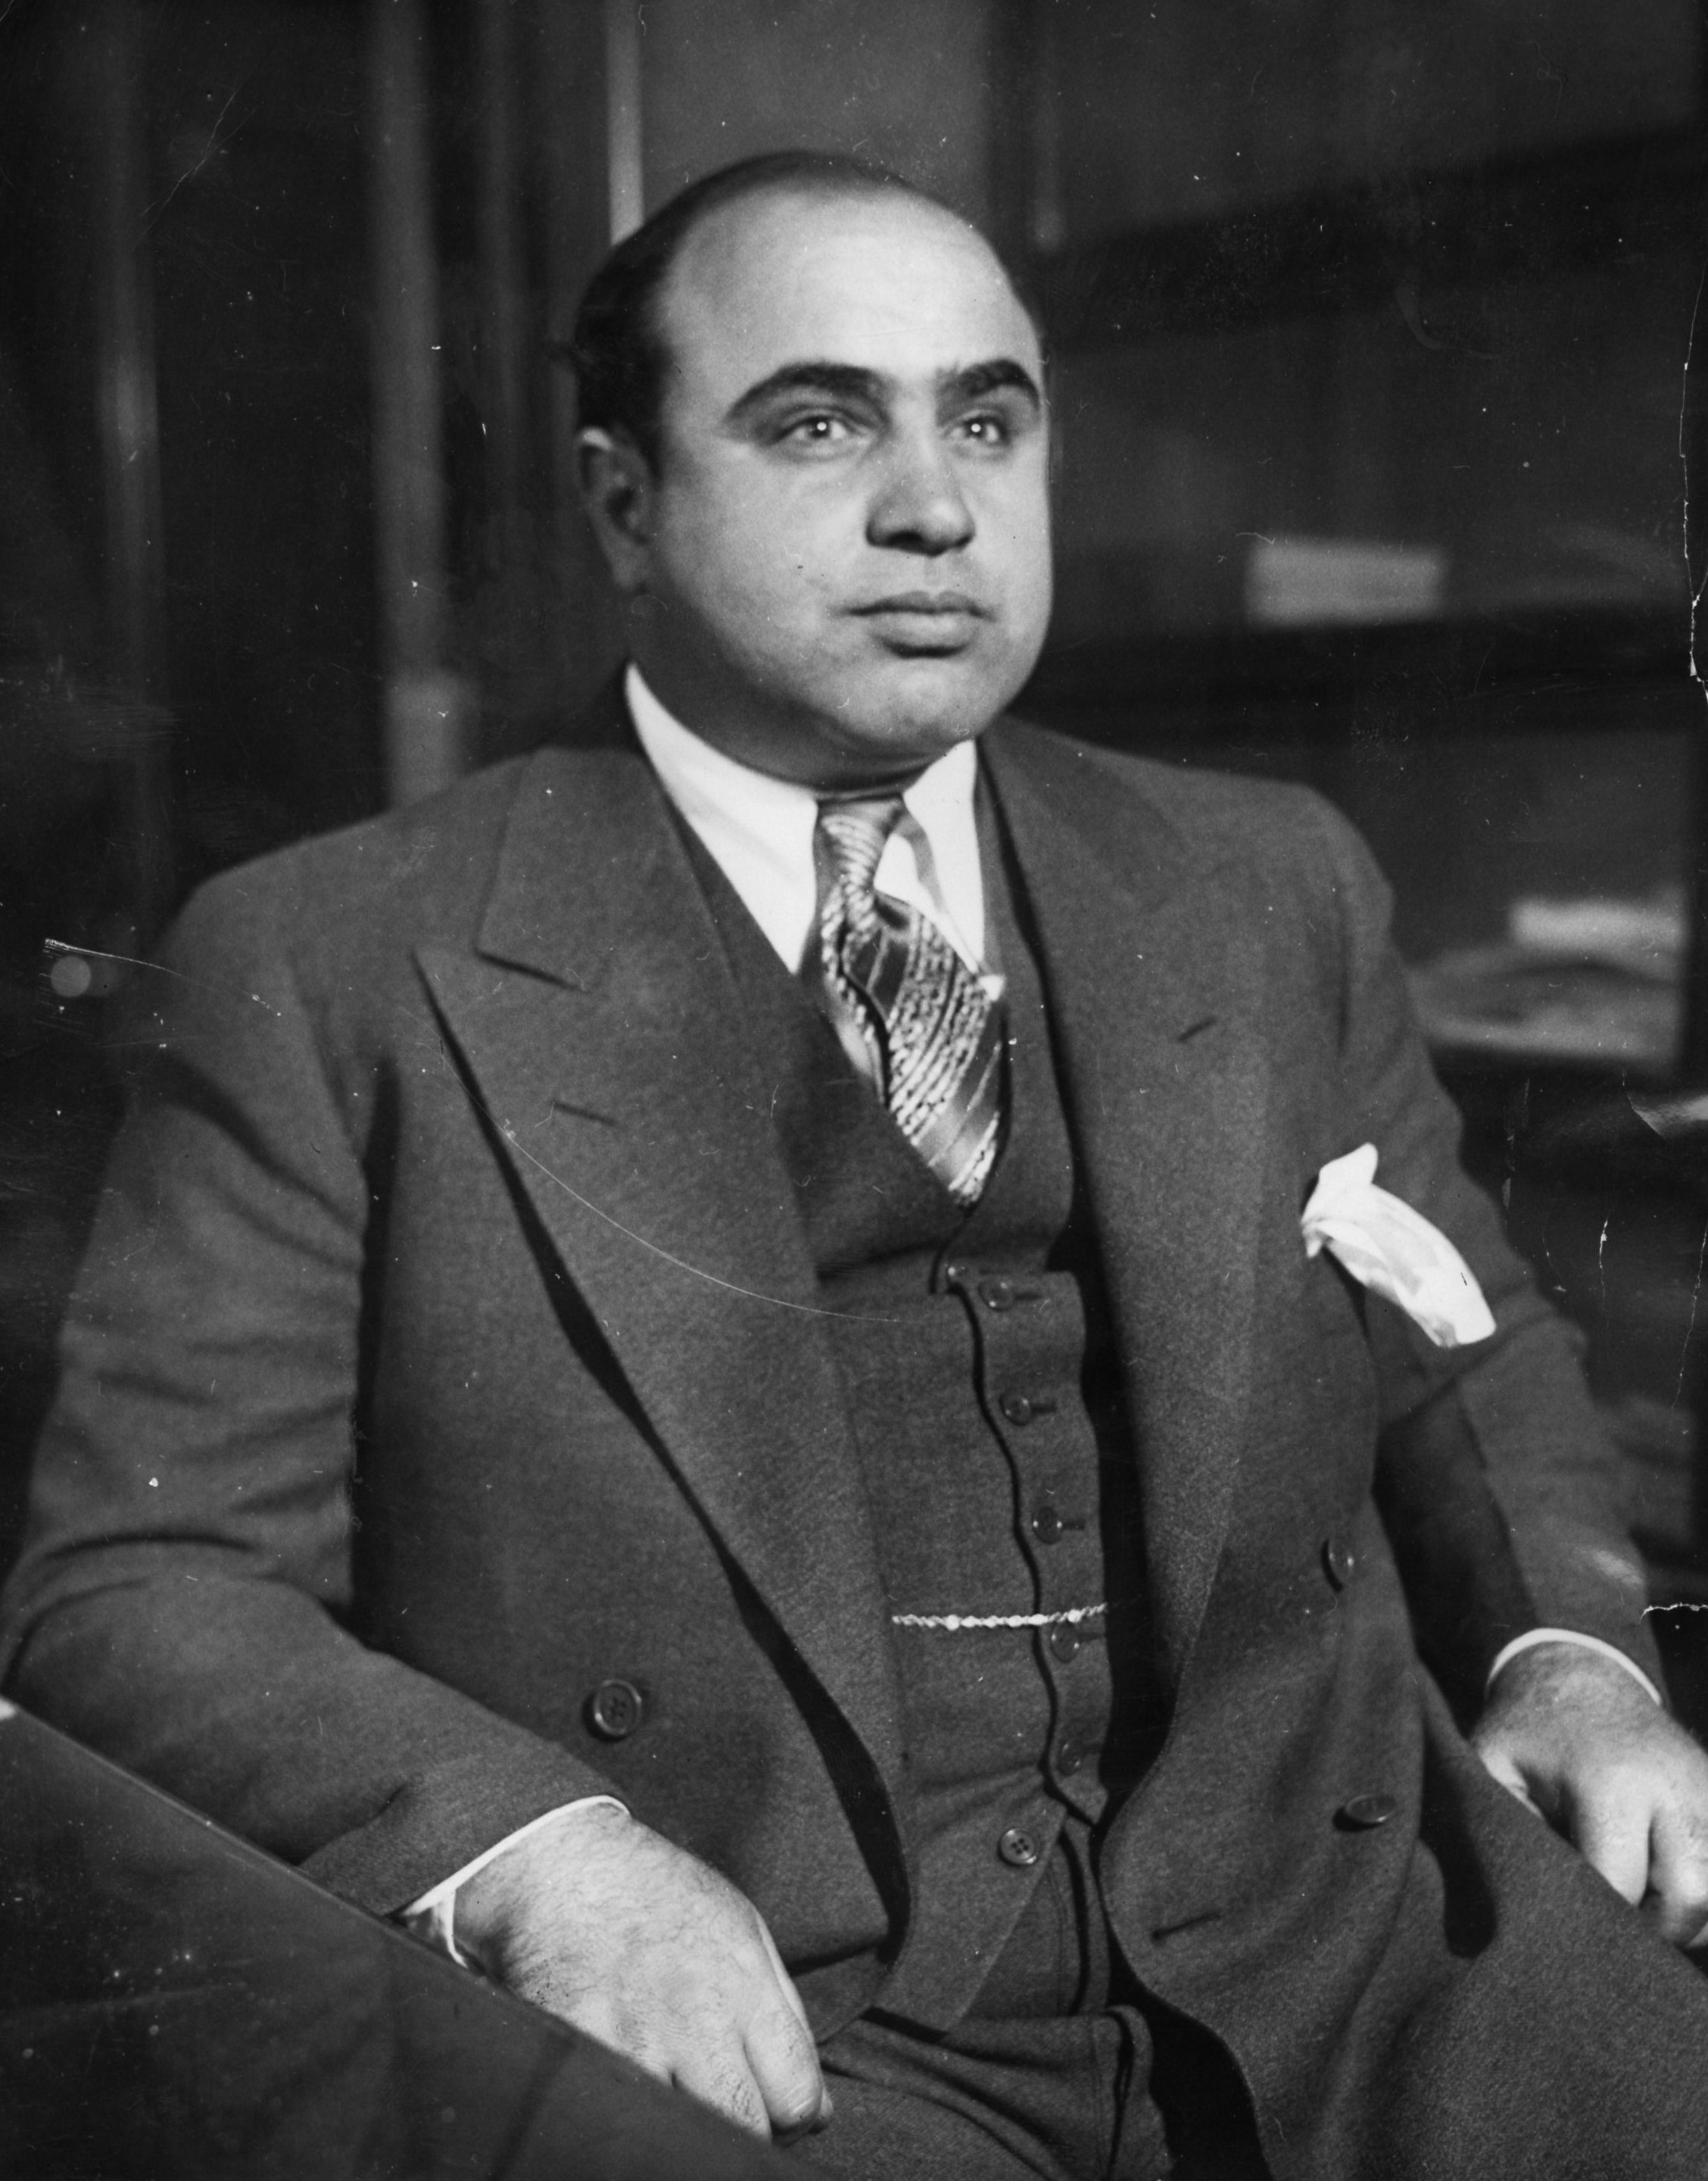 Picture of Al Capone